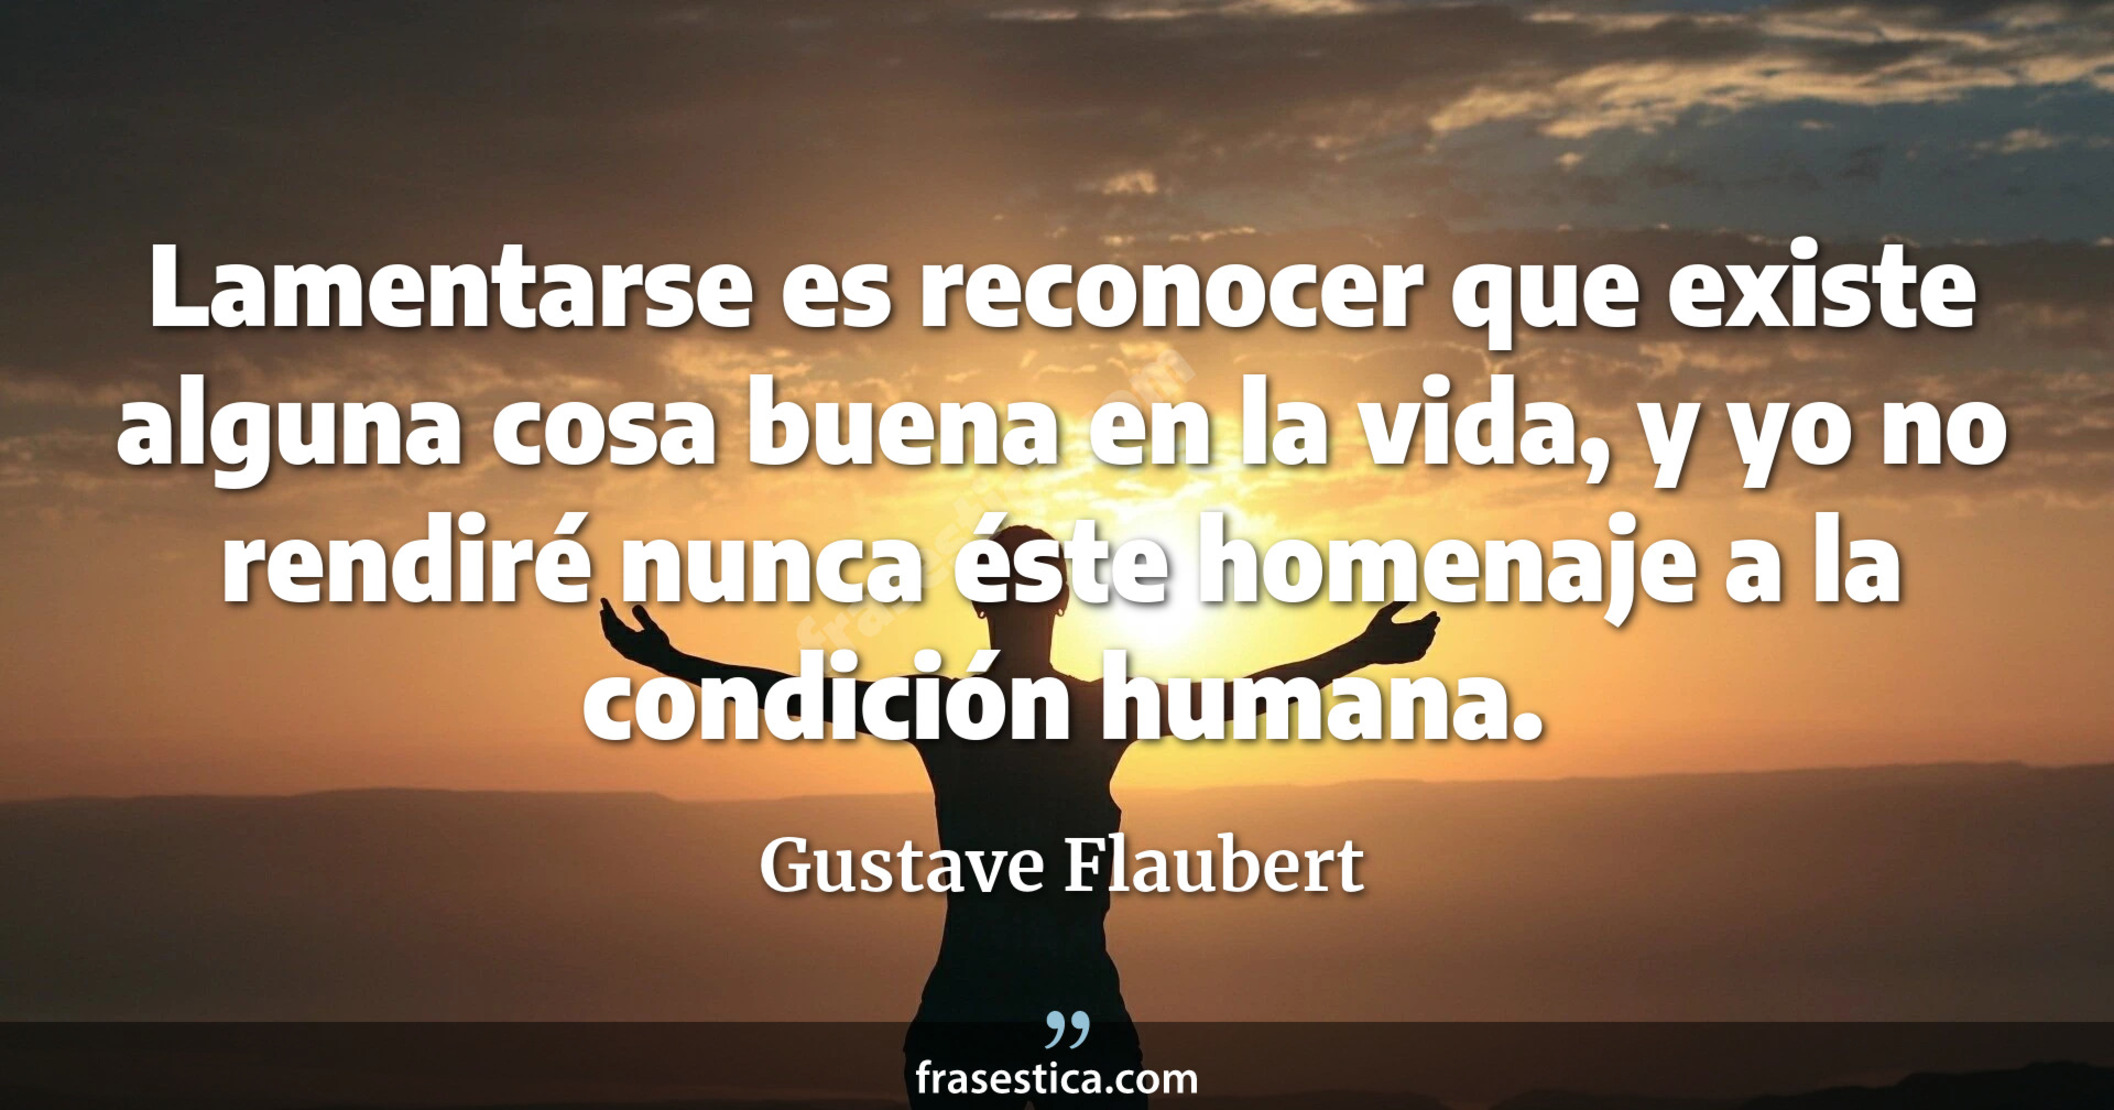 Lamentarse es reconocer que existe alguna cosa buena en la vida, y yo no rendiré nunca éste homenaje a la condición humana. - Gustave Flaubert